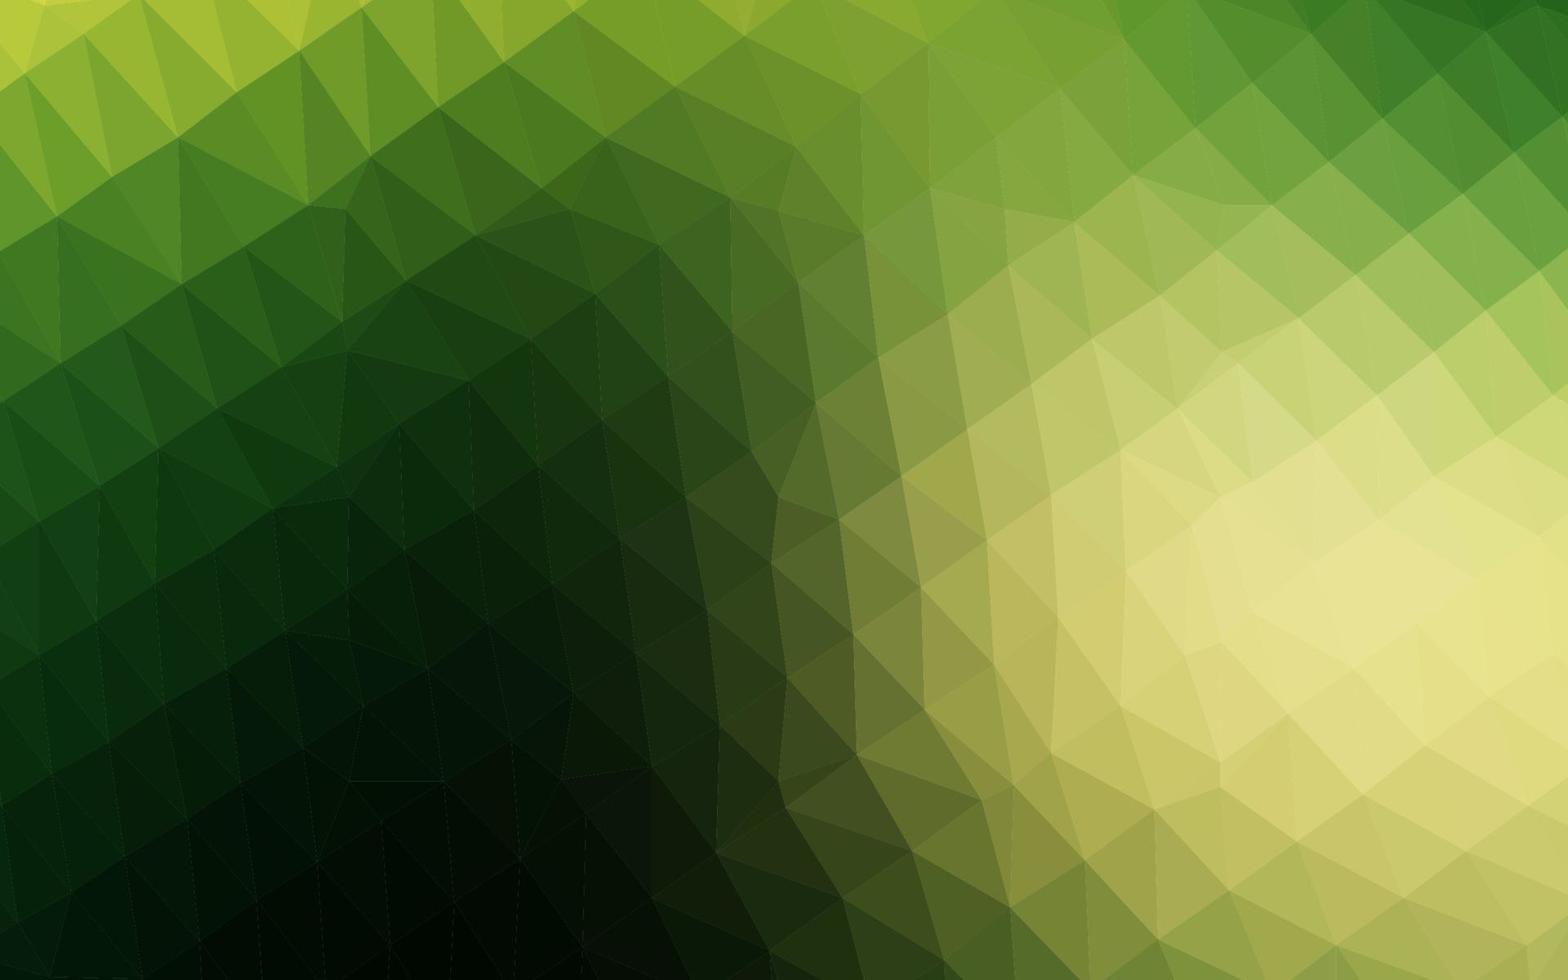 padrão poligonal de vetor verde e amarelo escuro.